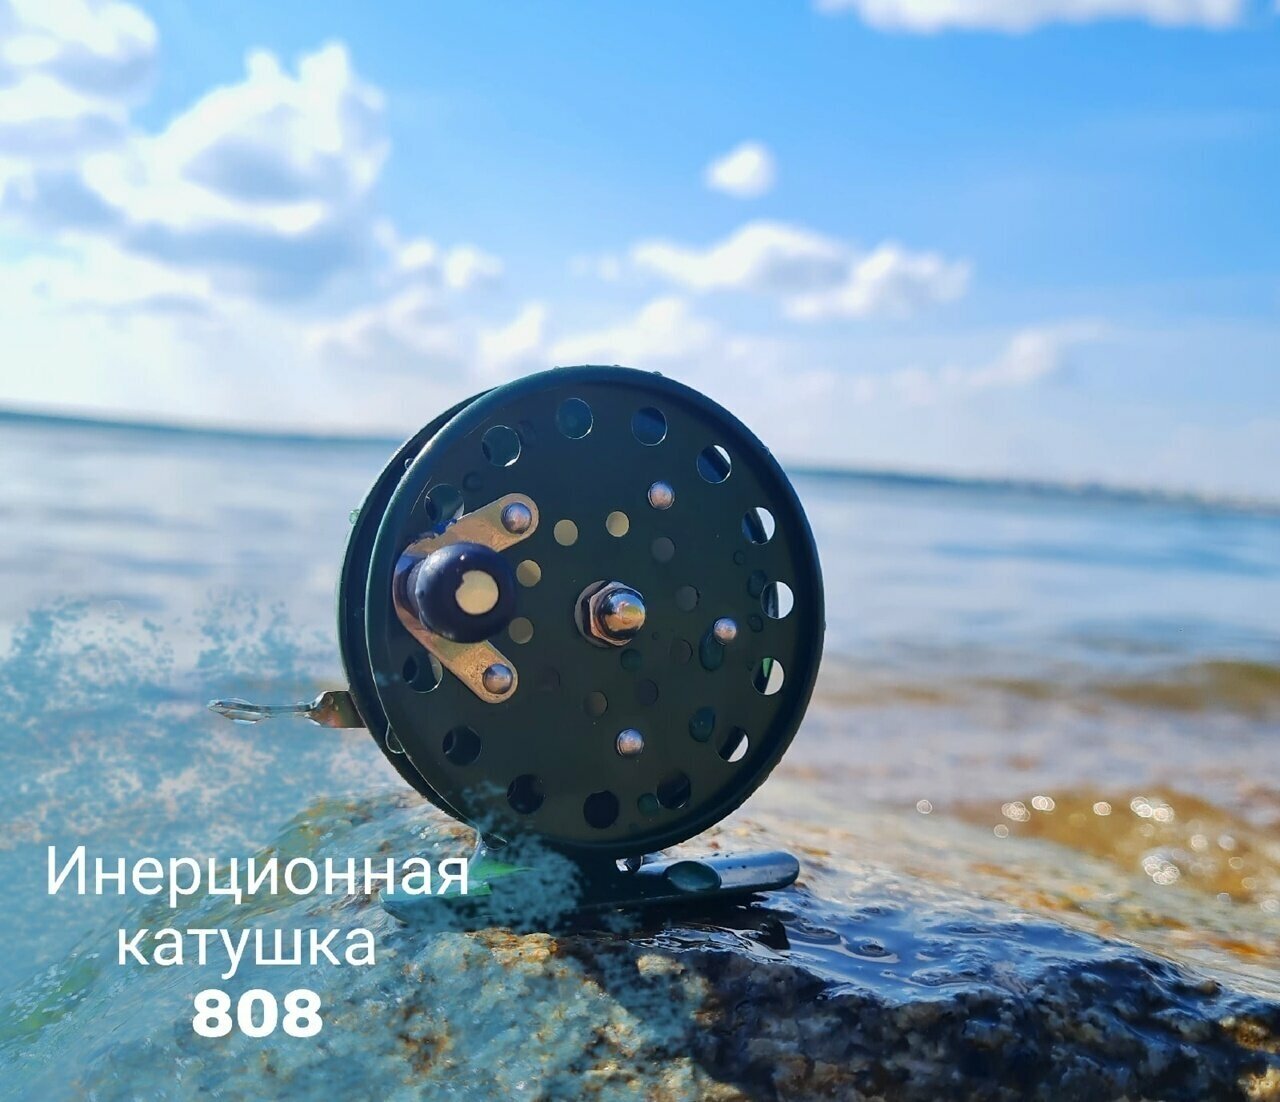 Катушка для рыбалки 808, инерционная d65 мм